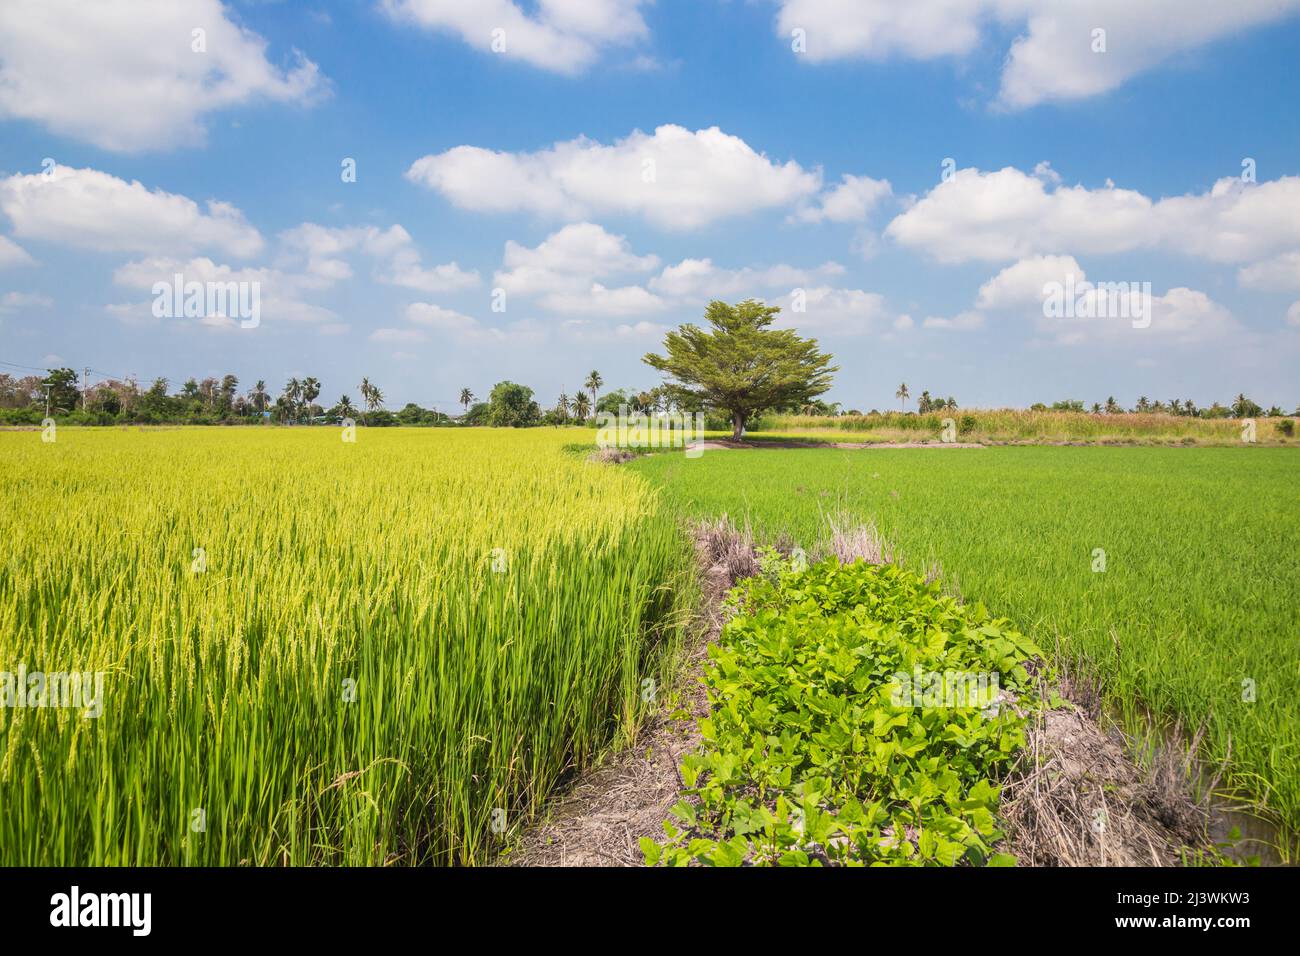 Hình ảnh đầy màu sắc của cánh đồng lúa chín rực rỡ sẽ khiến bạn muốn đắm chìm trong vẻ đẹp của các cánh đồng này.